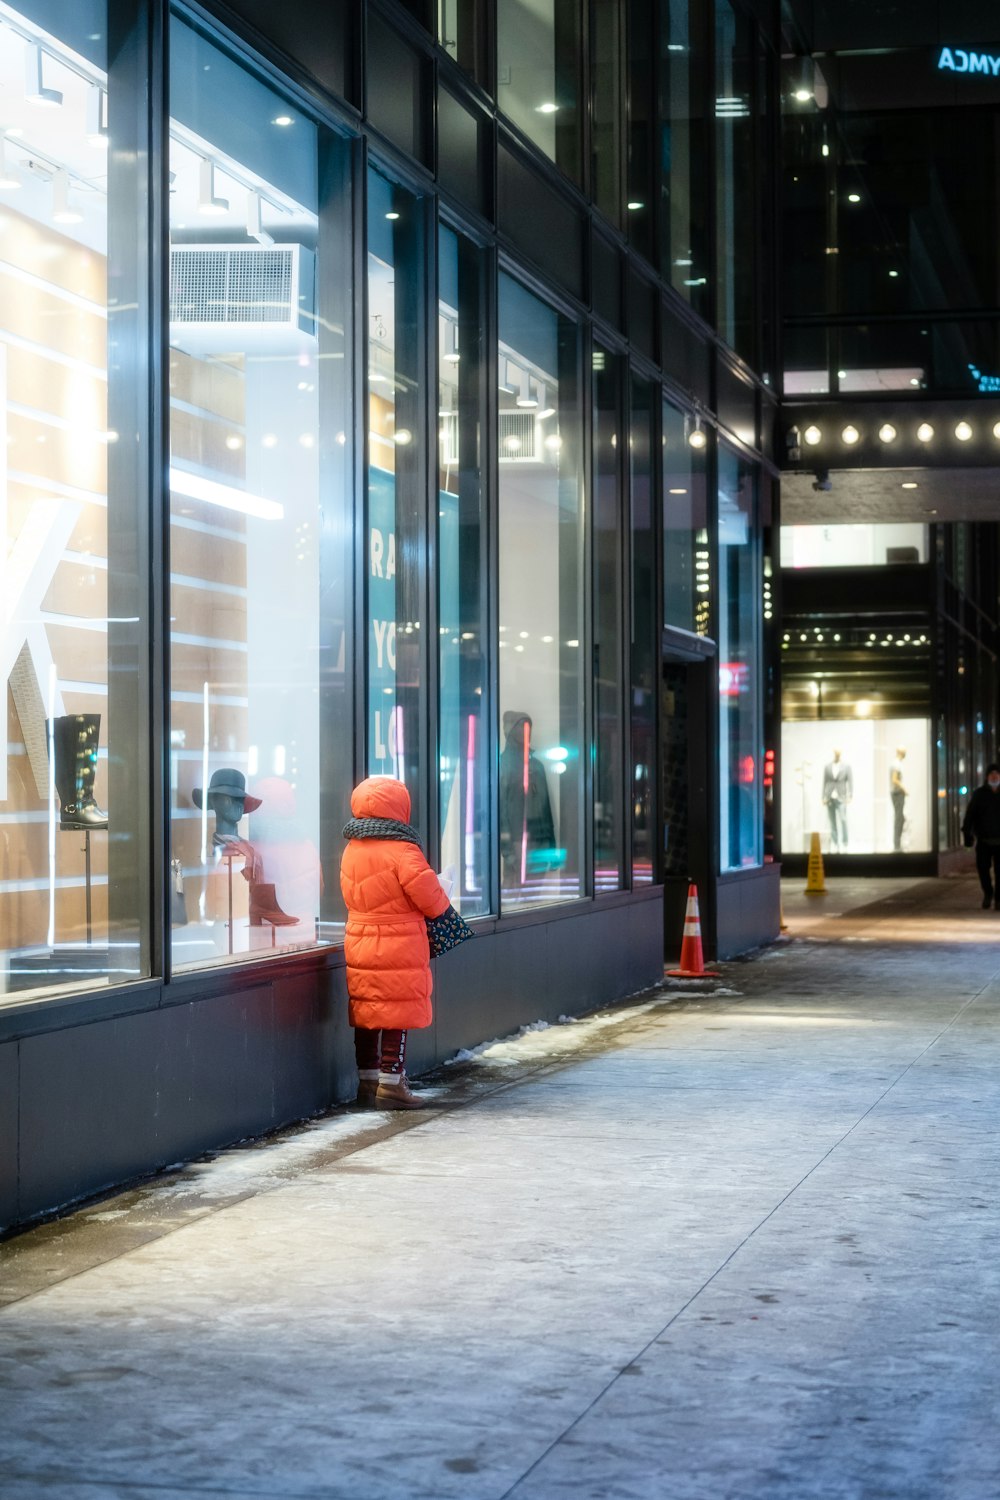 a little boy in a red jacket looking in a store window